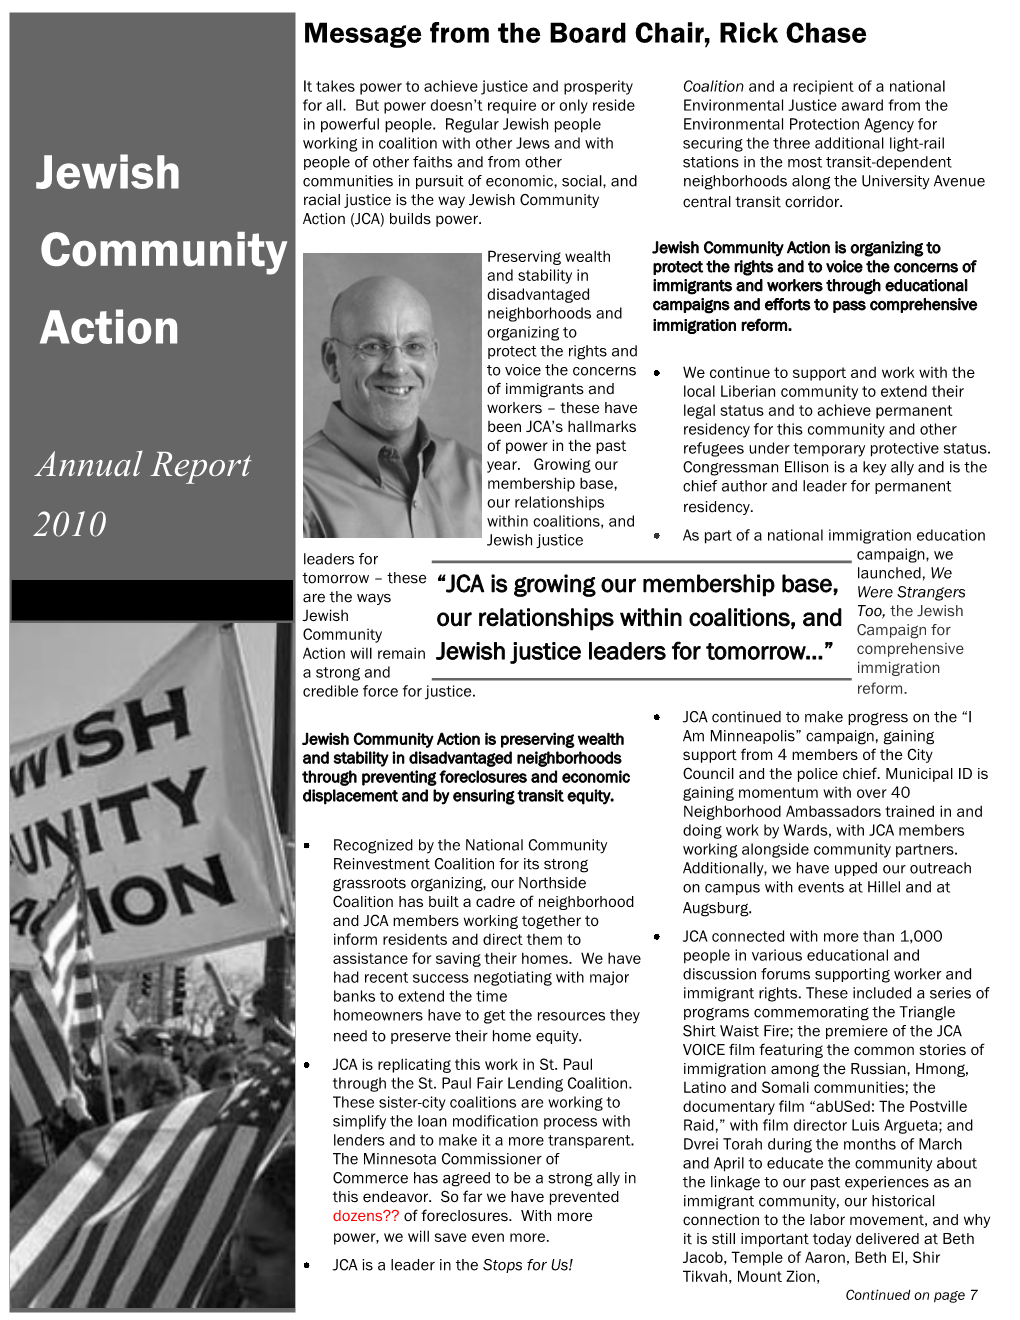 Jewish Community Action